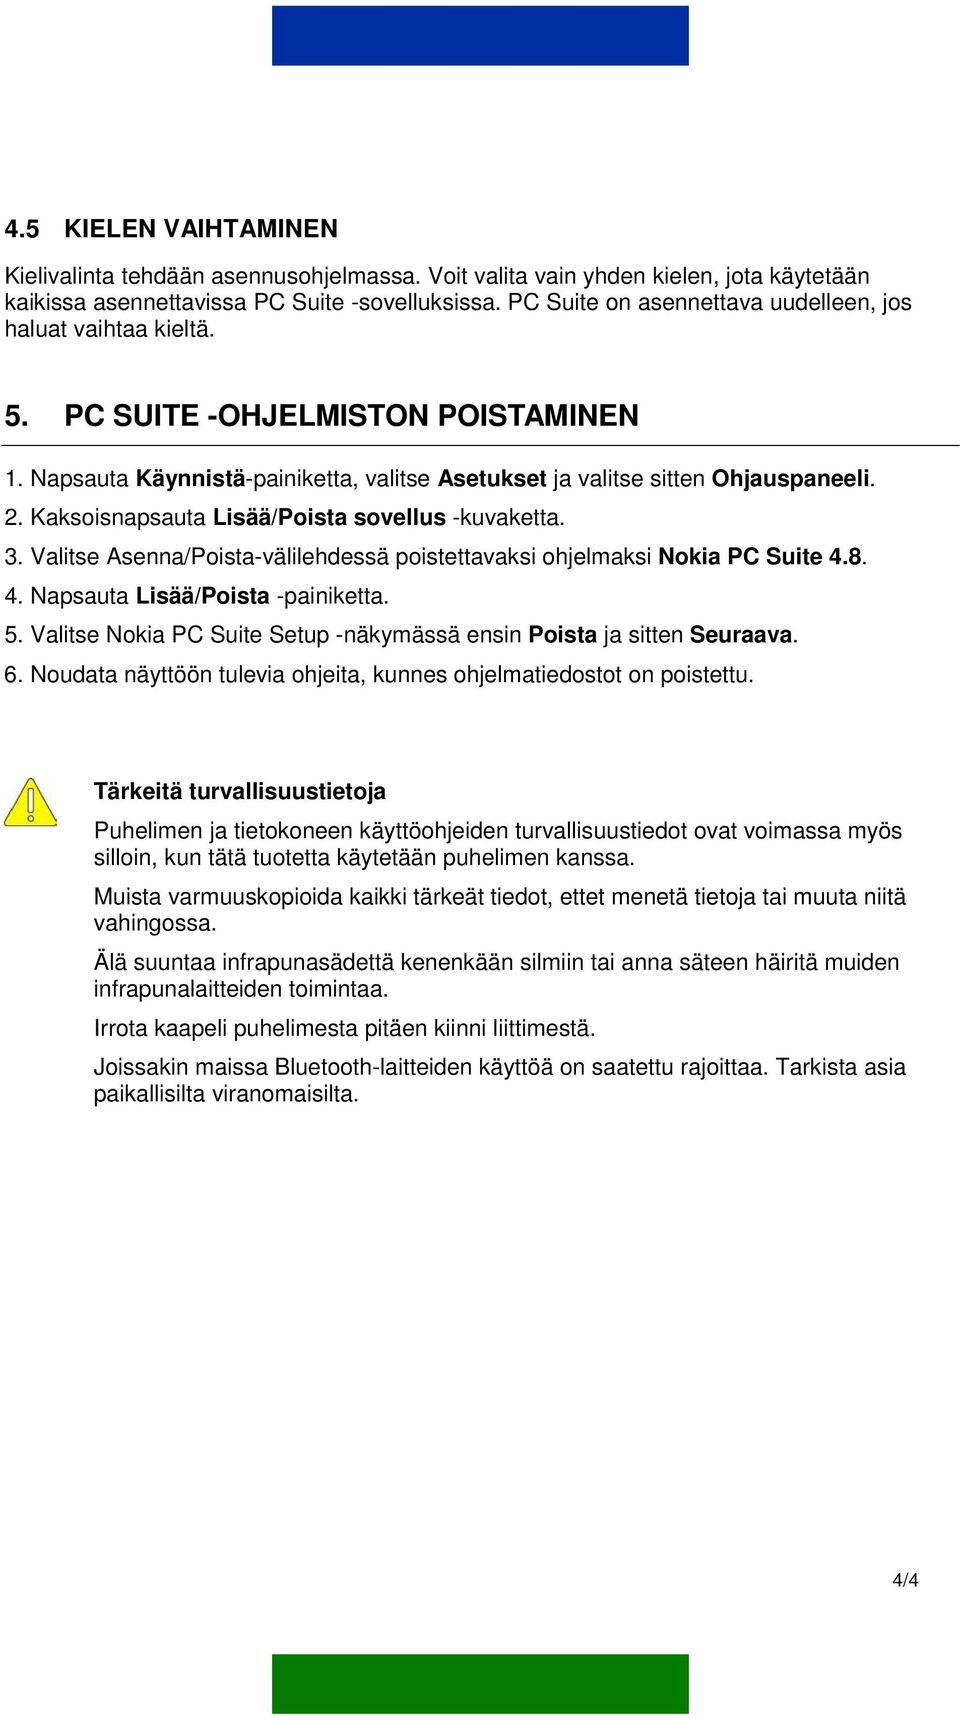 Kaksoisnapsauta Lisää/Poista sovellus -kuvaketta. 3. Valitse Asenna/Poista-välilehdessä poistettavaksi ohjelmaksi Nokia PC Suite 4.8. 4. Napsauta Lisää/Poista -painiketta. 5.